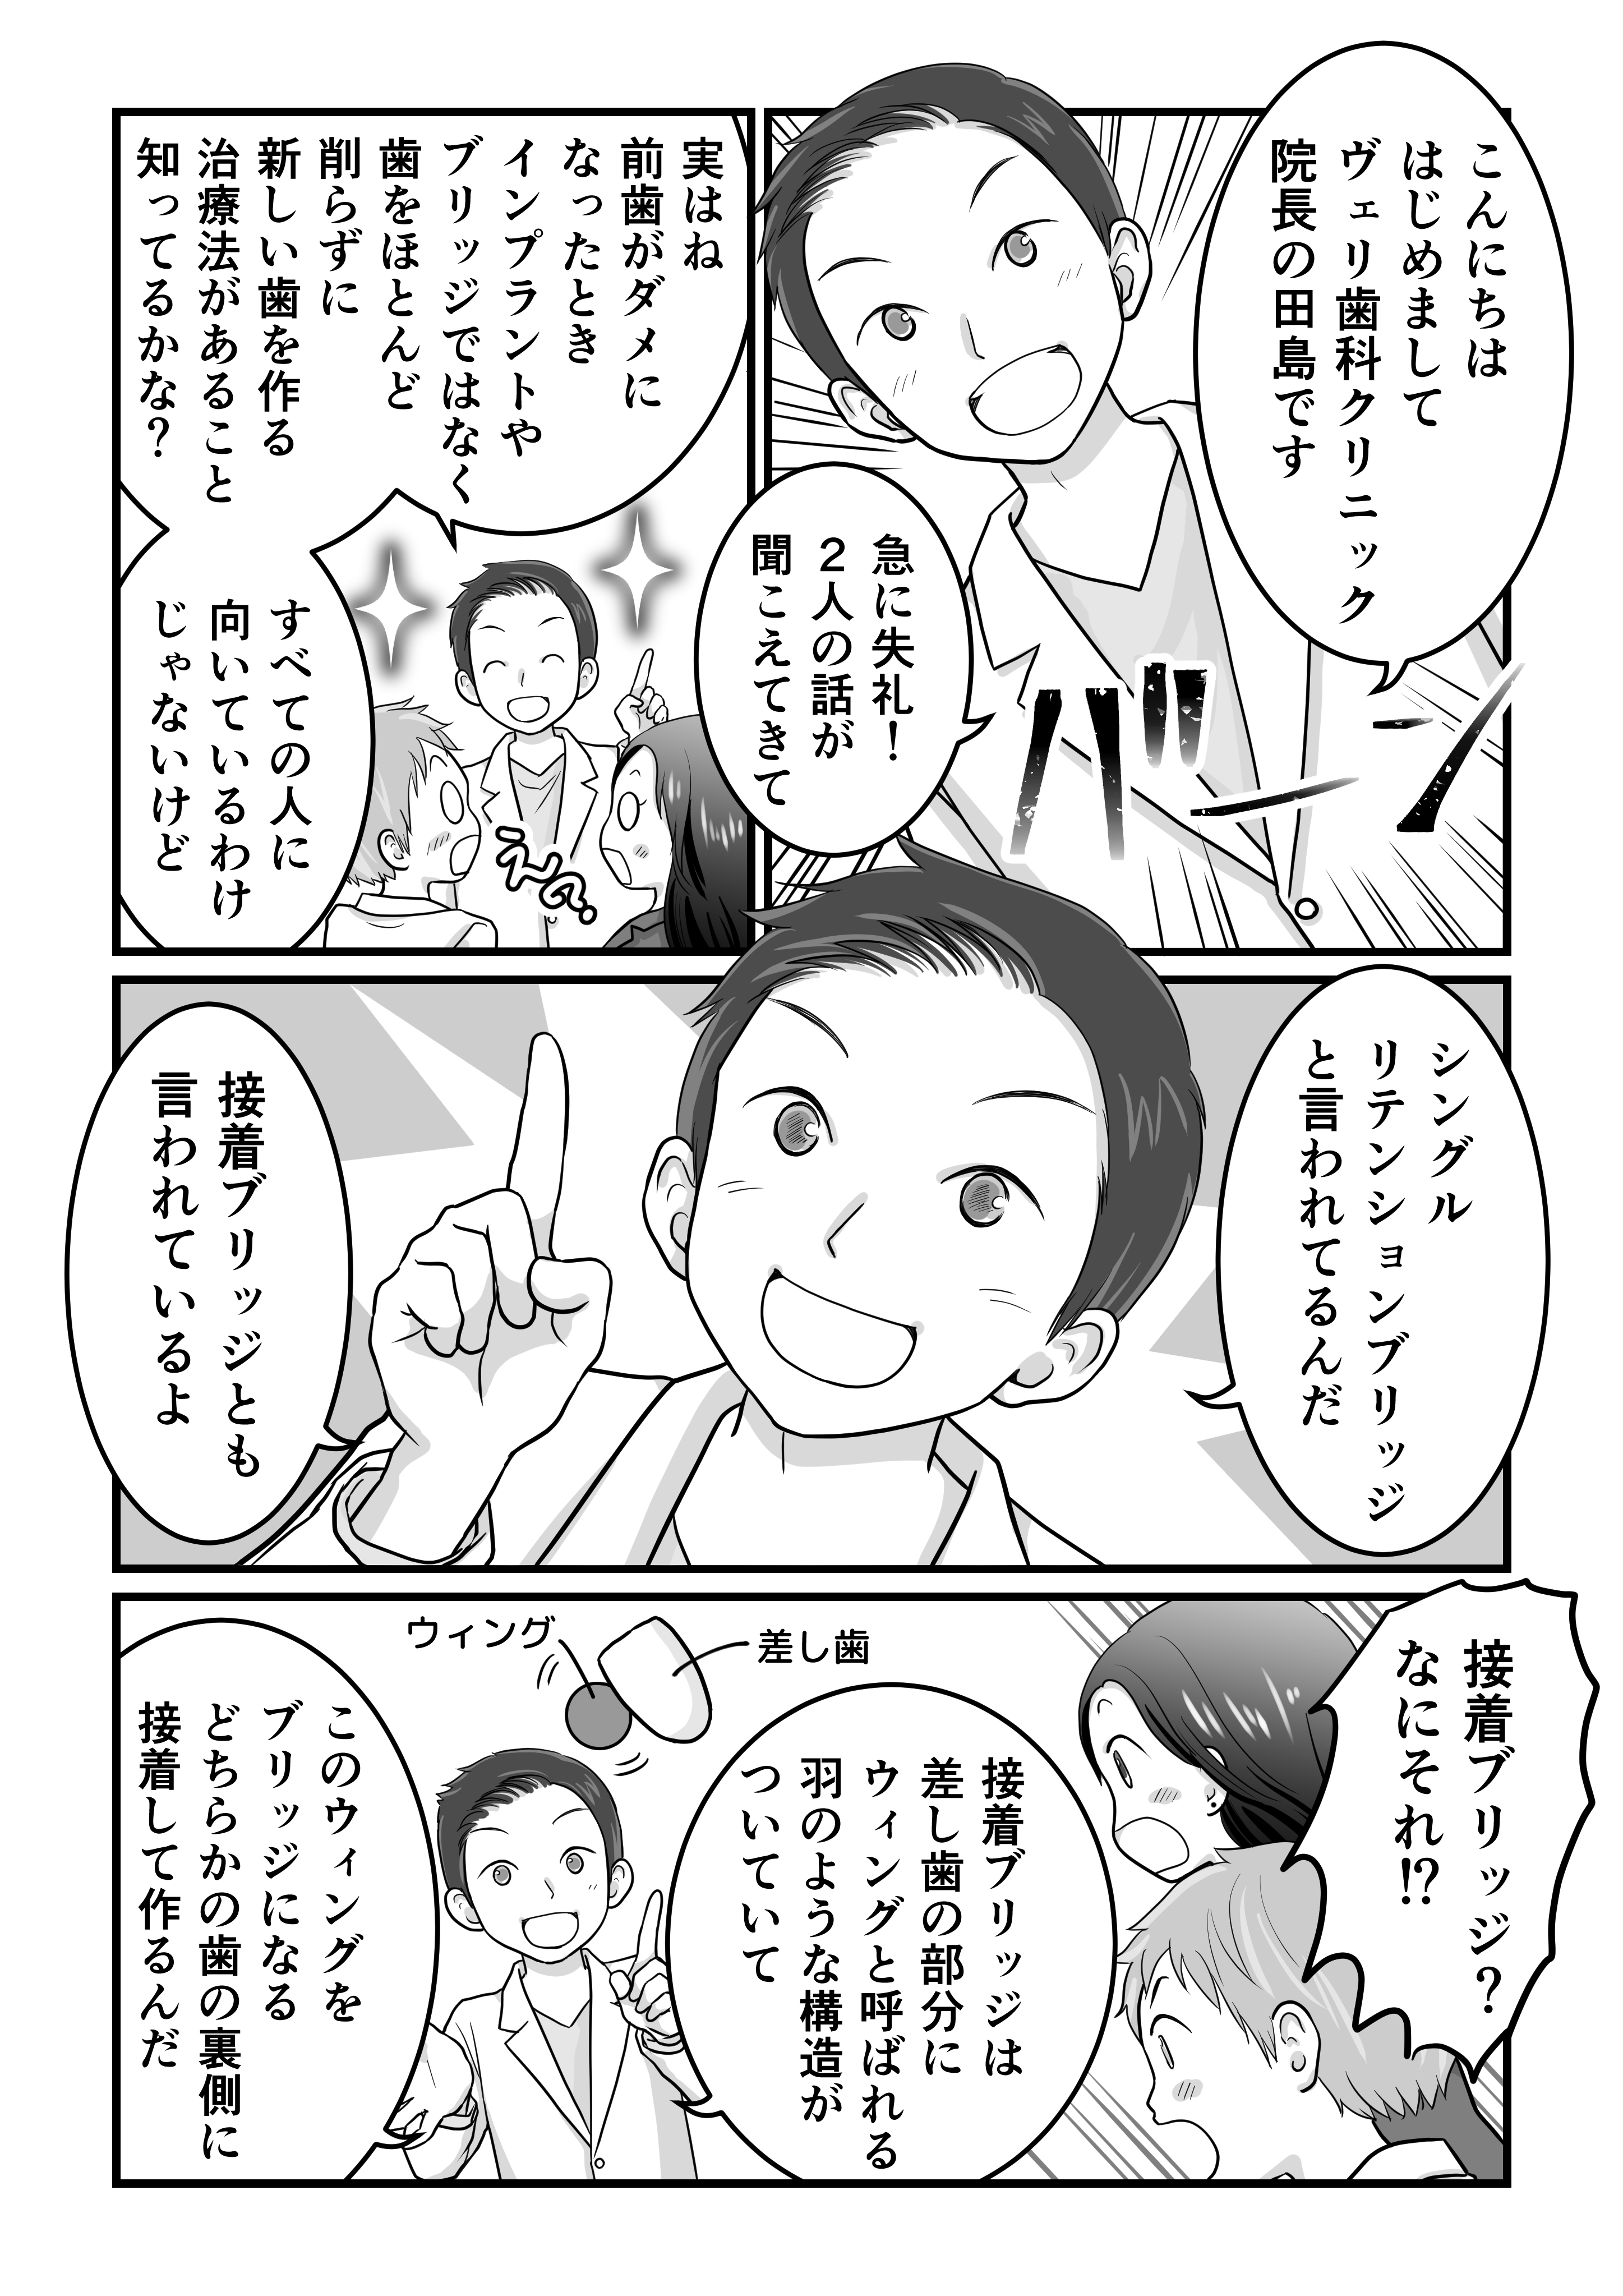 田島様歯科漫画（確認用低画質）_003